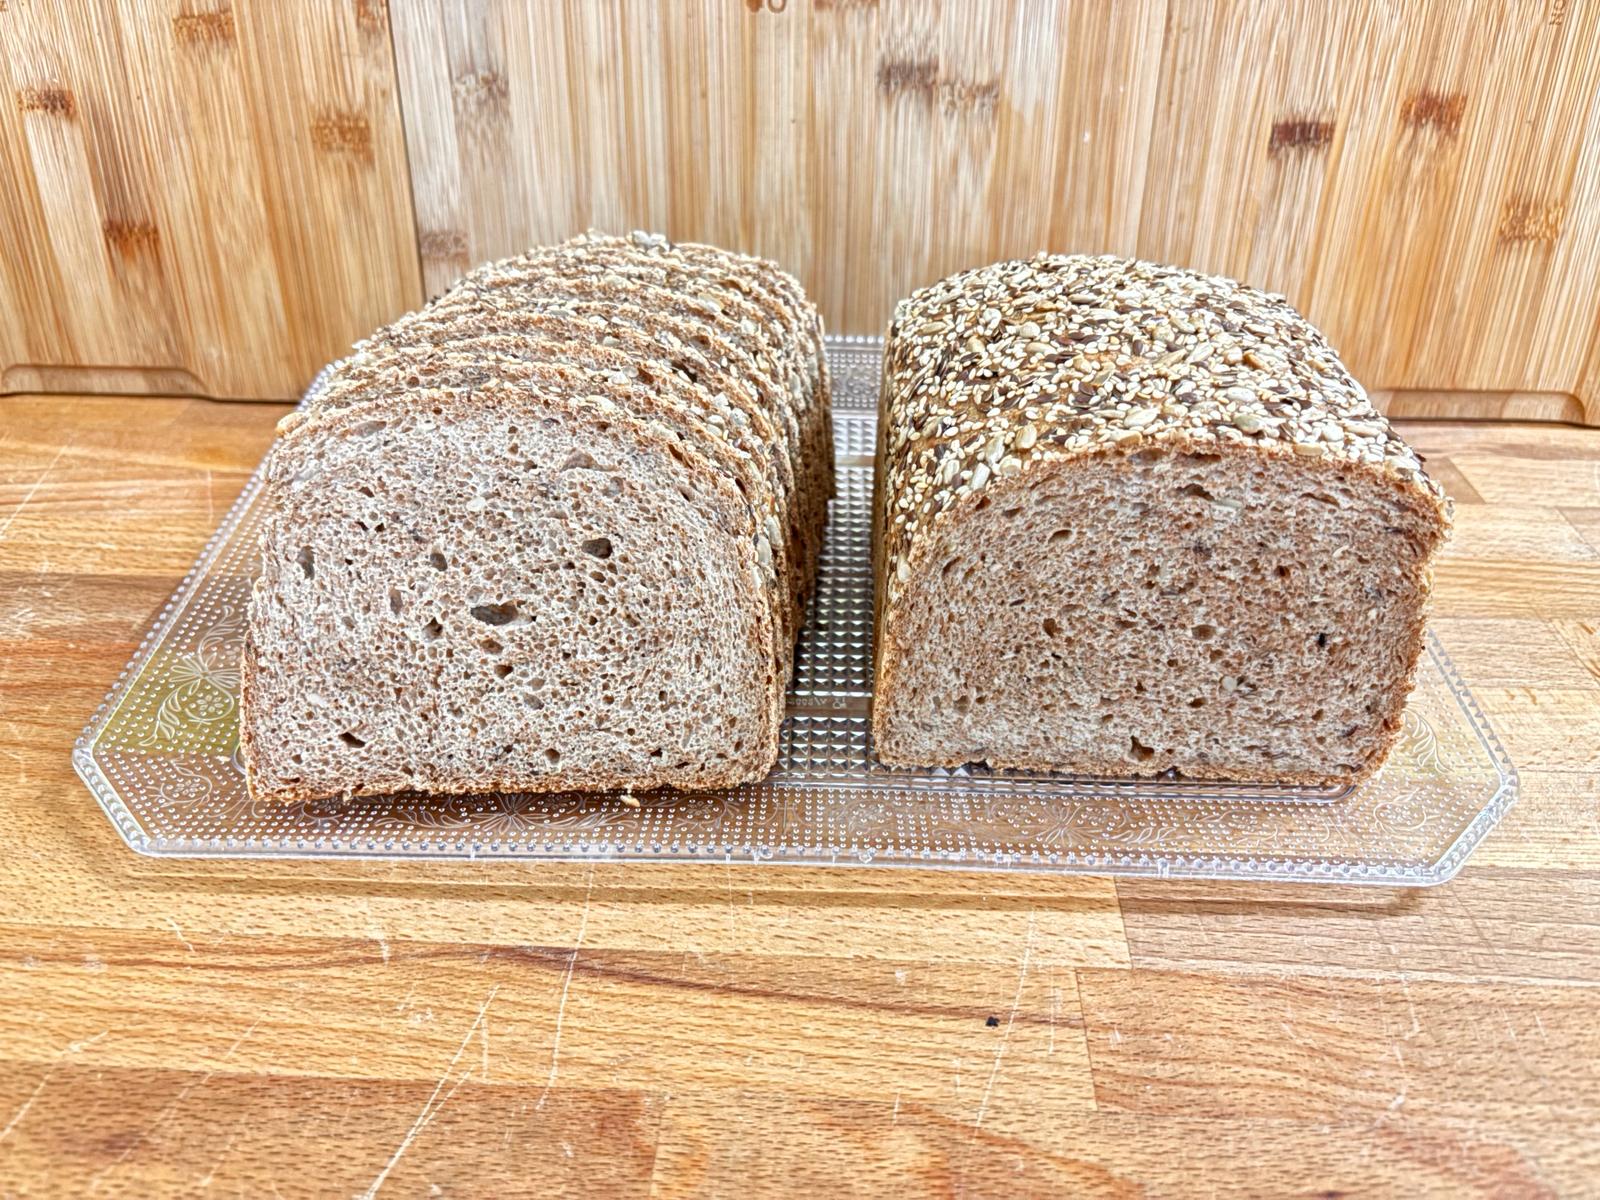 Pan con tres semillas